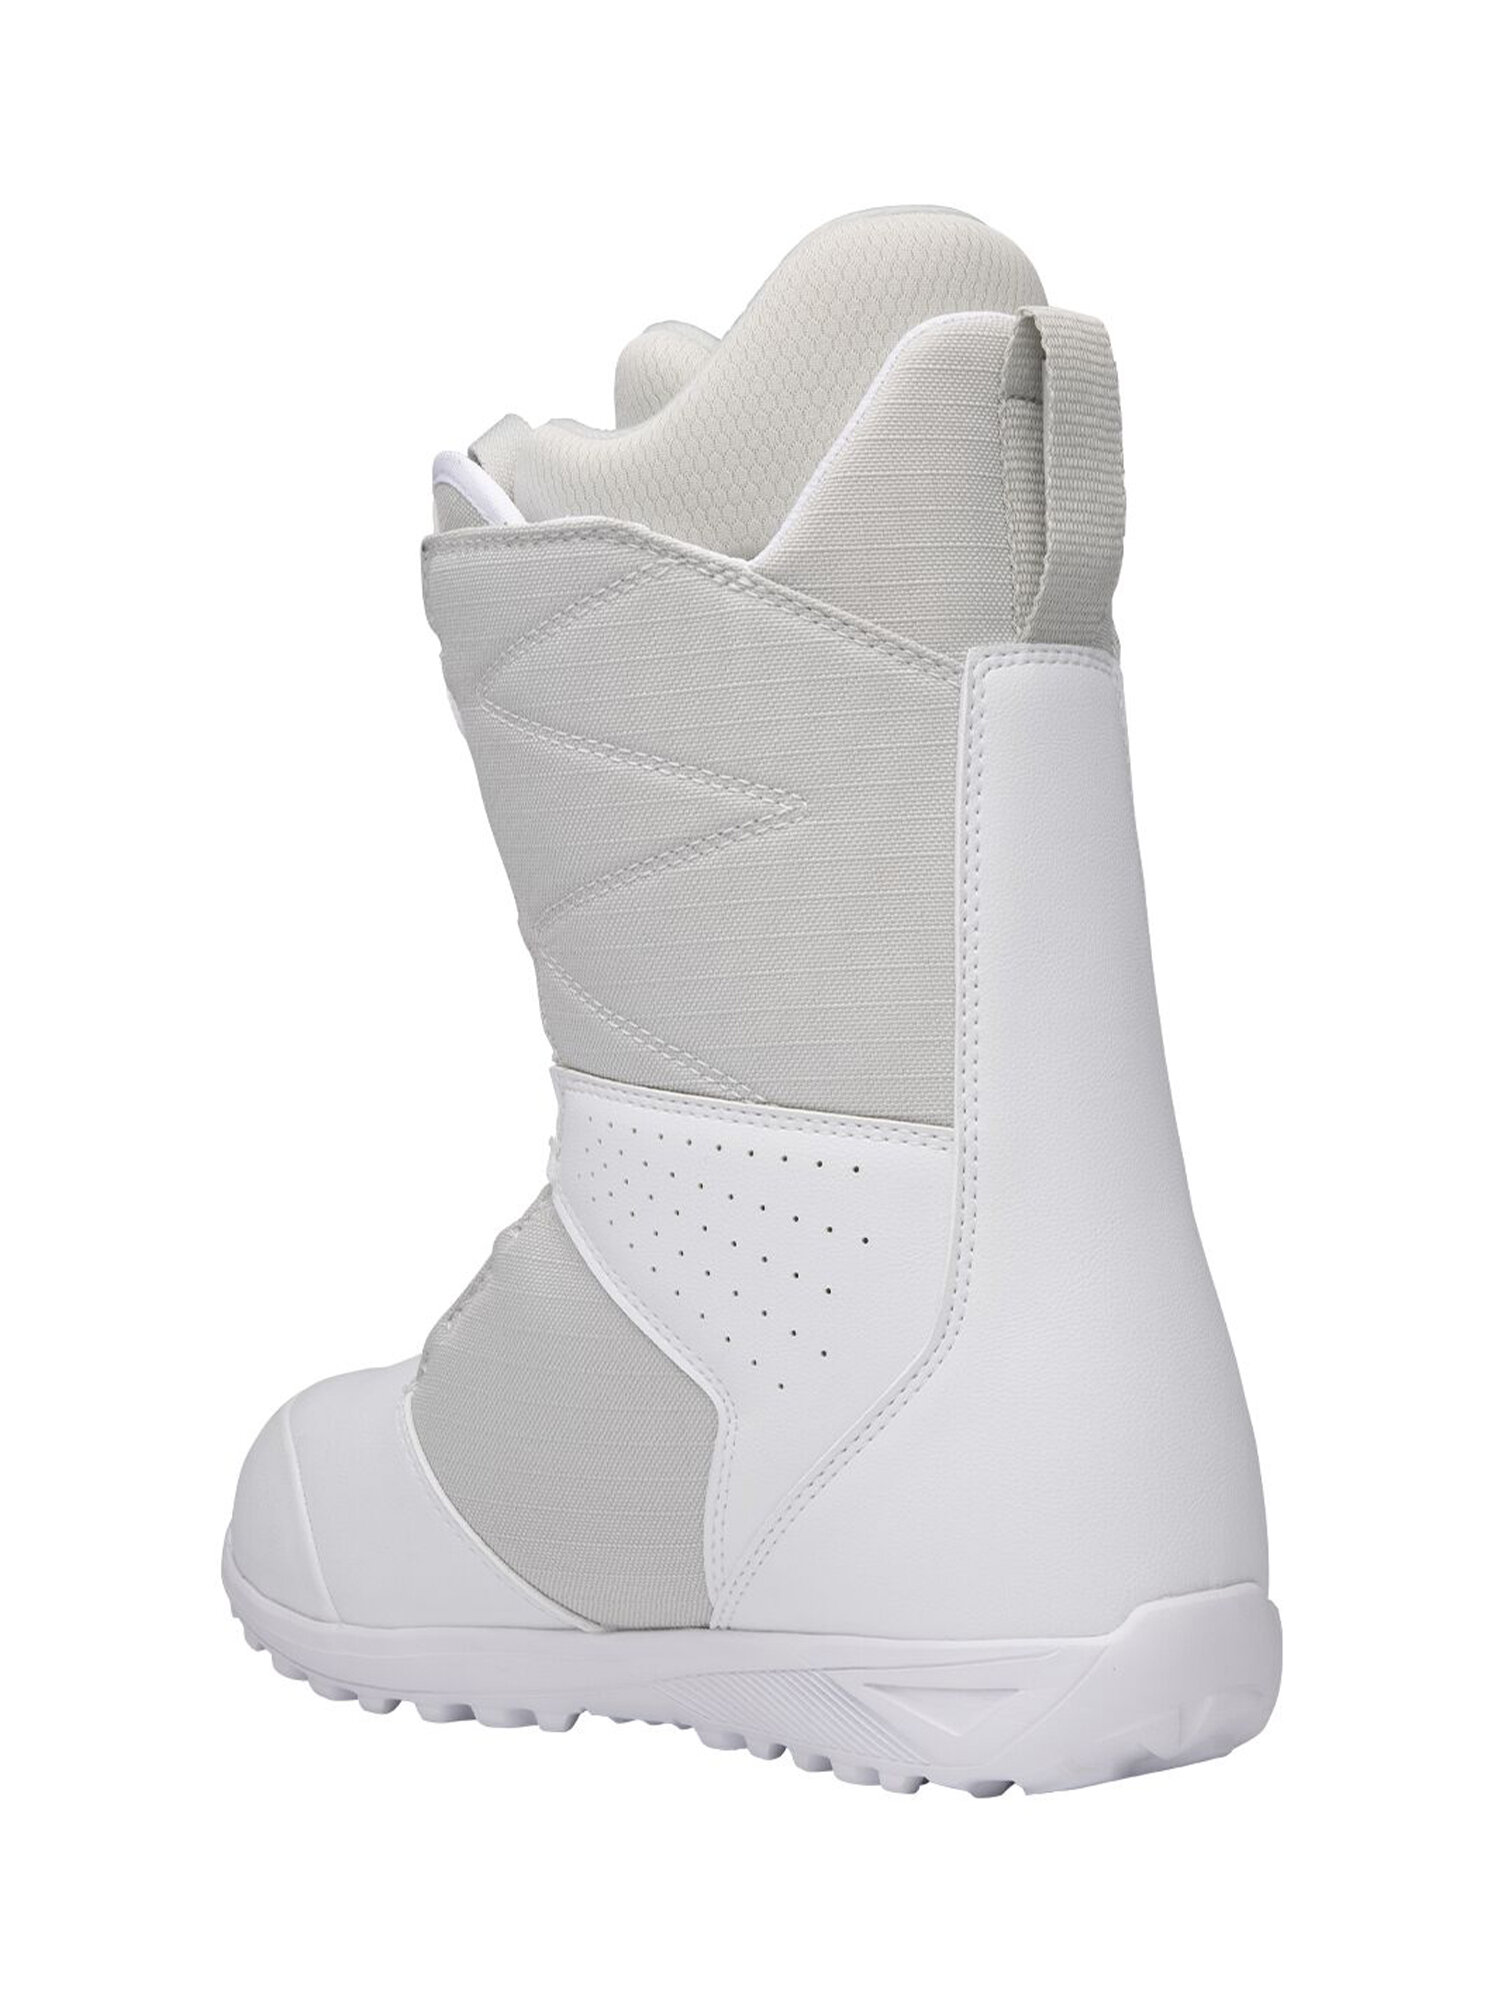 Ботинки для сноуборда NIDECKER Sierra W White/Gray (US:8)